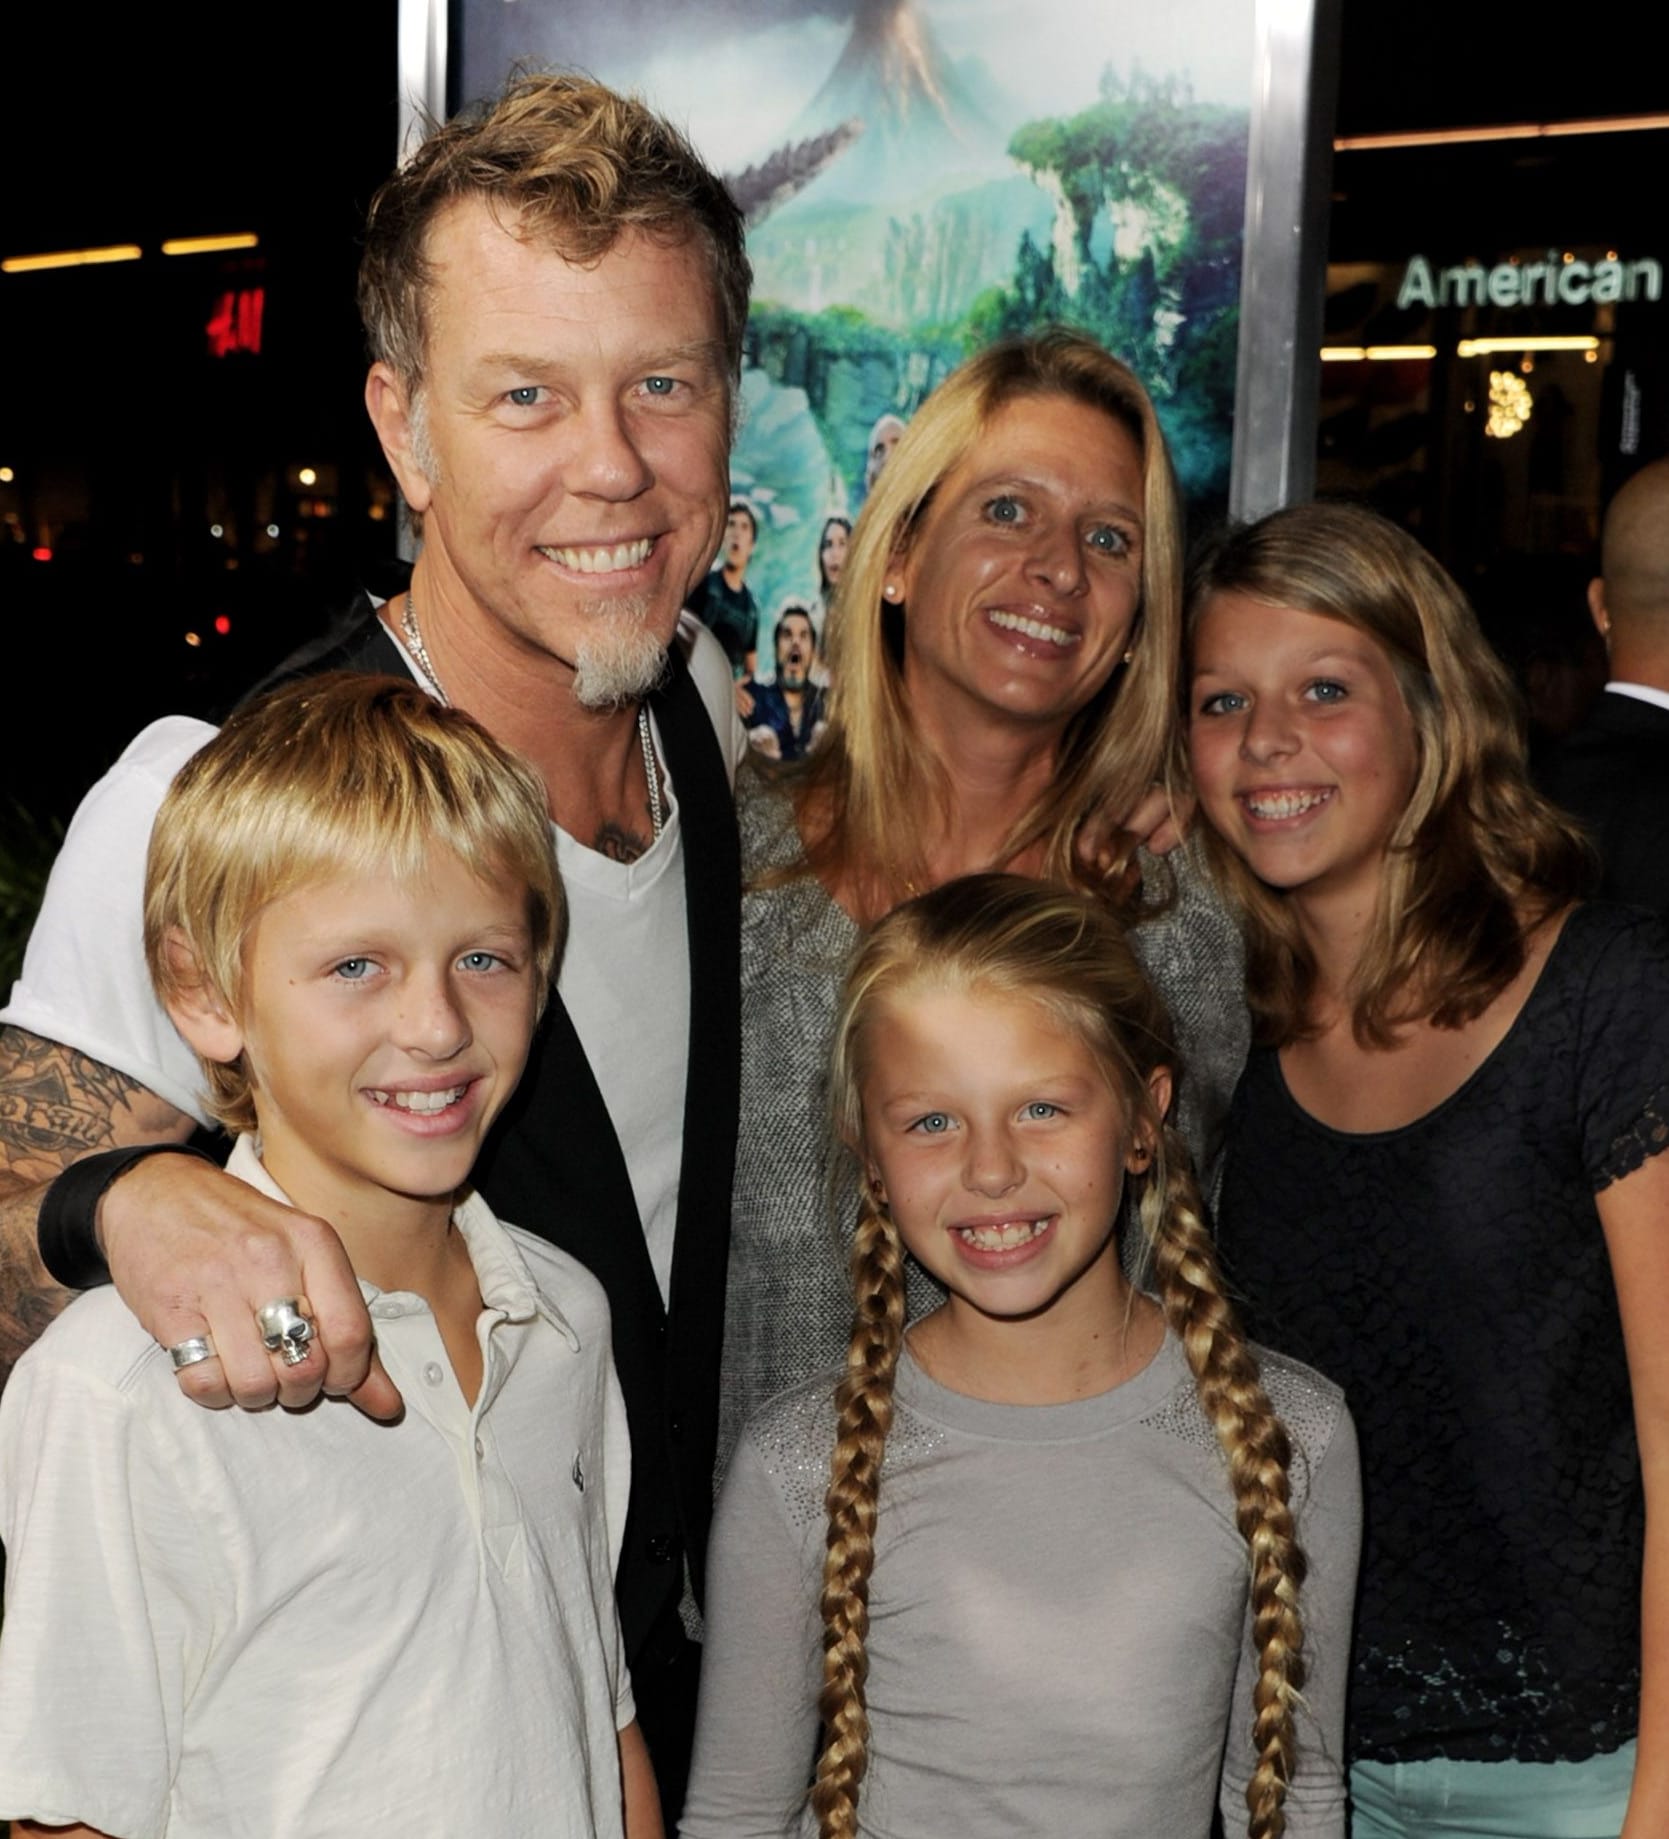 James und Francesca Hetfield mit ihren Kindern Castor, Marcella und Cali im Jahr 2012.